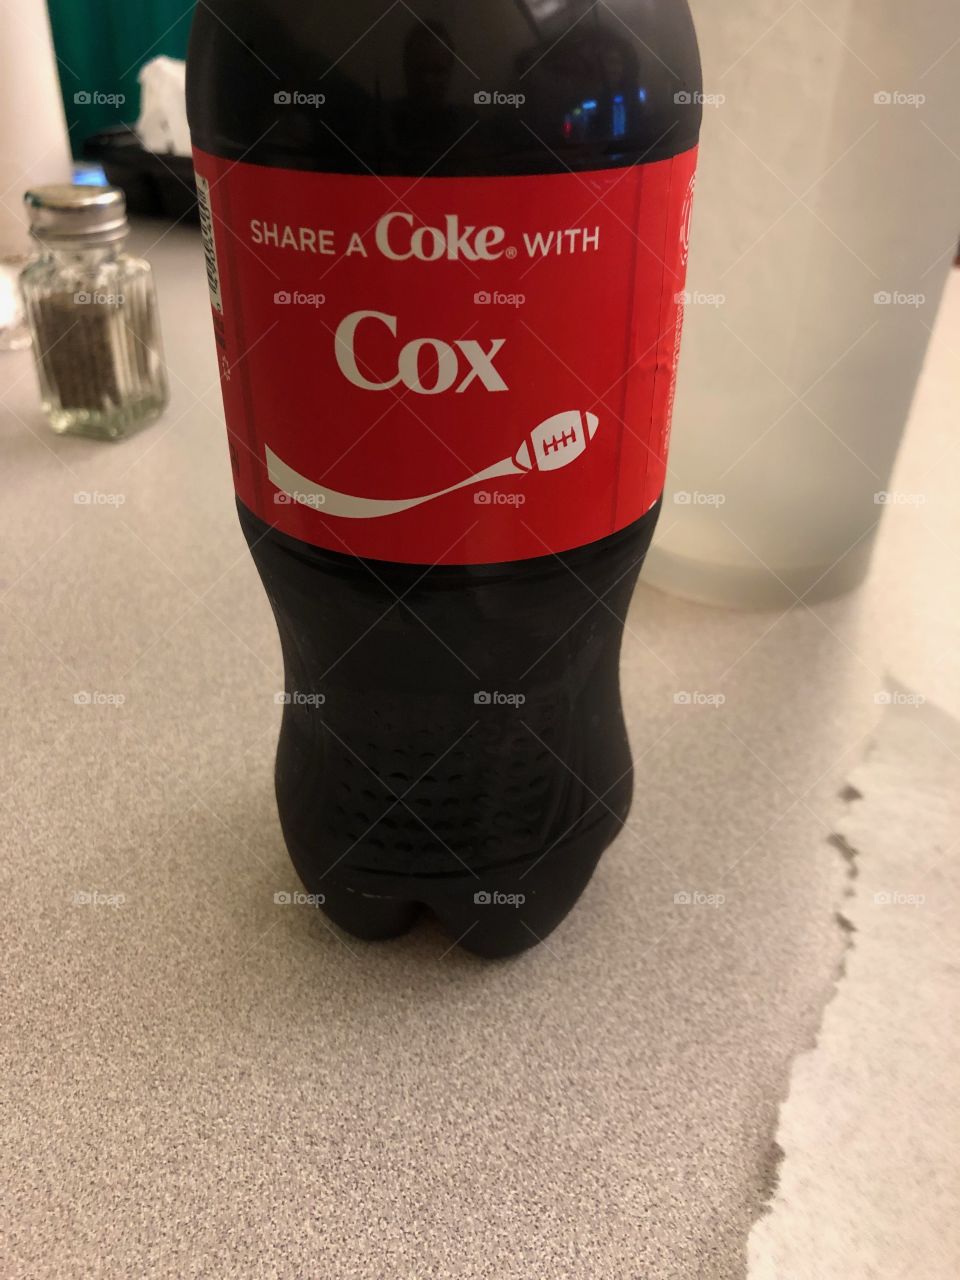 Soda, weird name. 